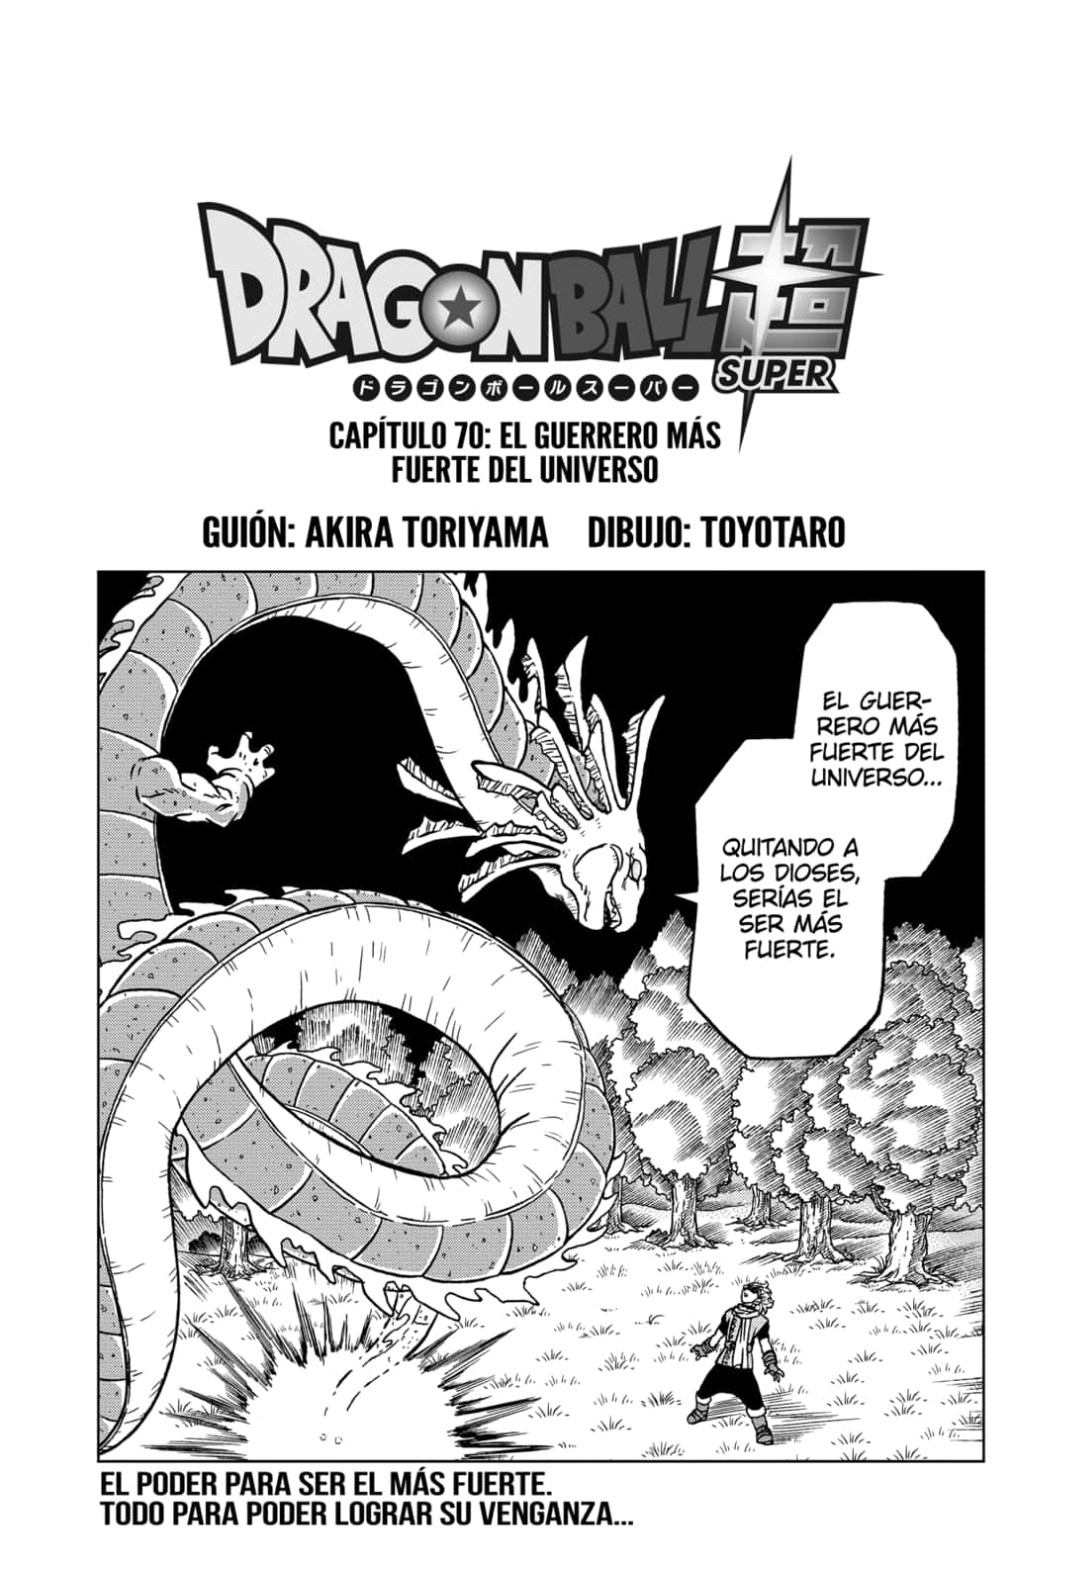 Dragon Ball Super Manga 70 Español Completo